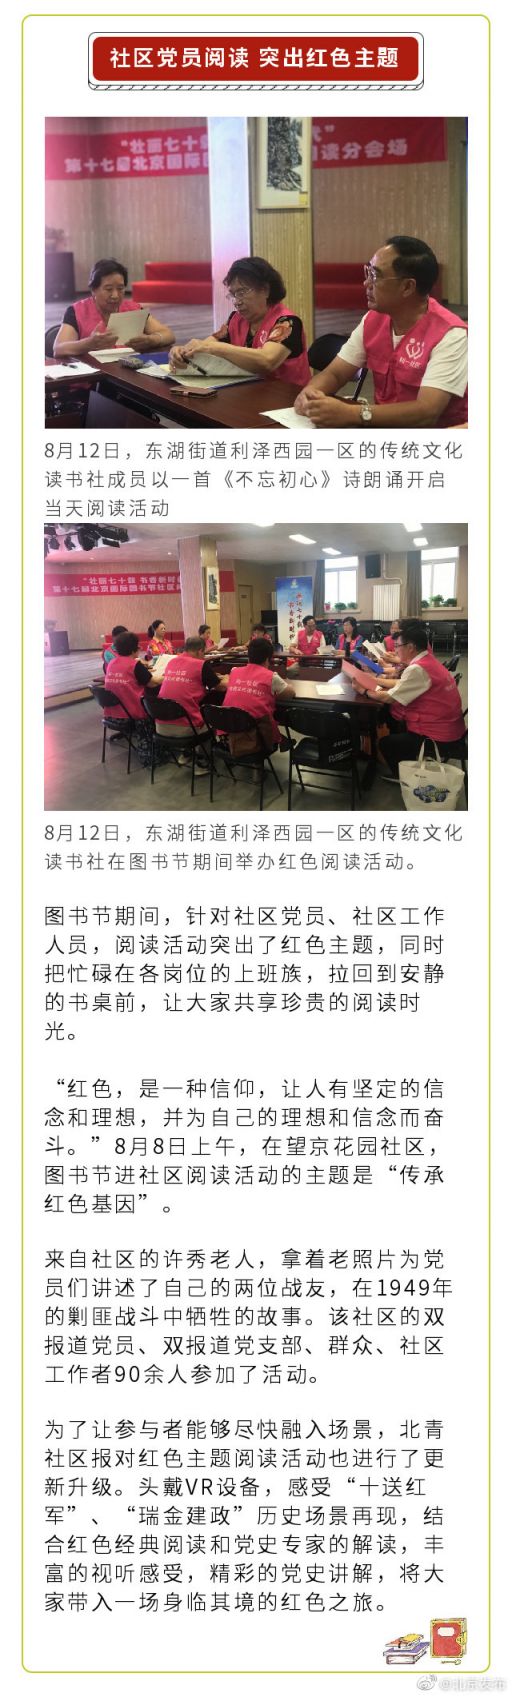 2019北京国际图书节30场社区活动安排陆续开启